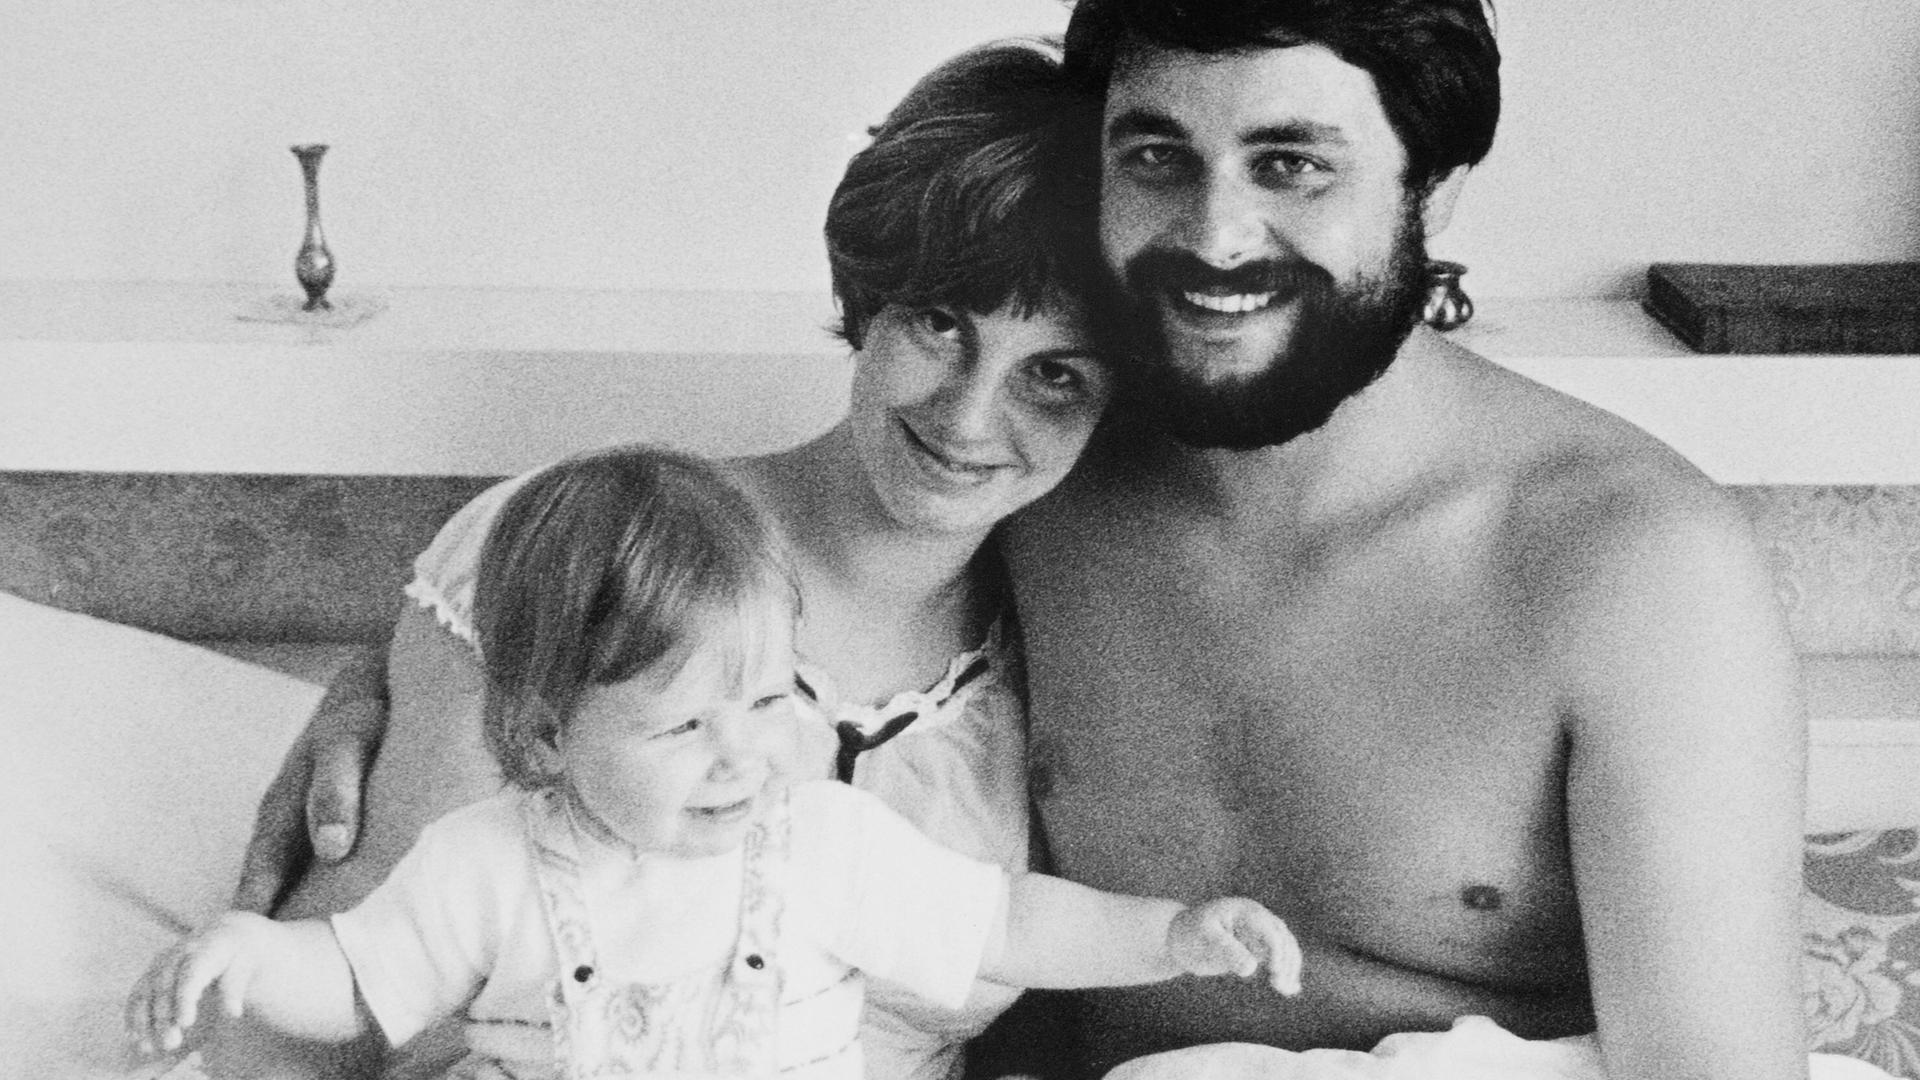 Schwarzweiss Aufnahme von einem jungen Paar mit Baby im Bett, die Eltern lächeln glücklich in die Kamera. DDR, Leipzig 1978.